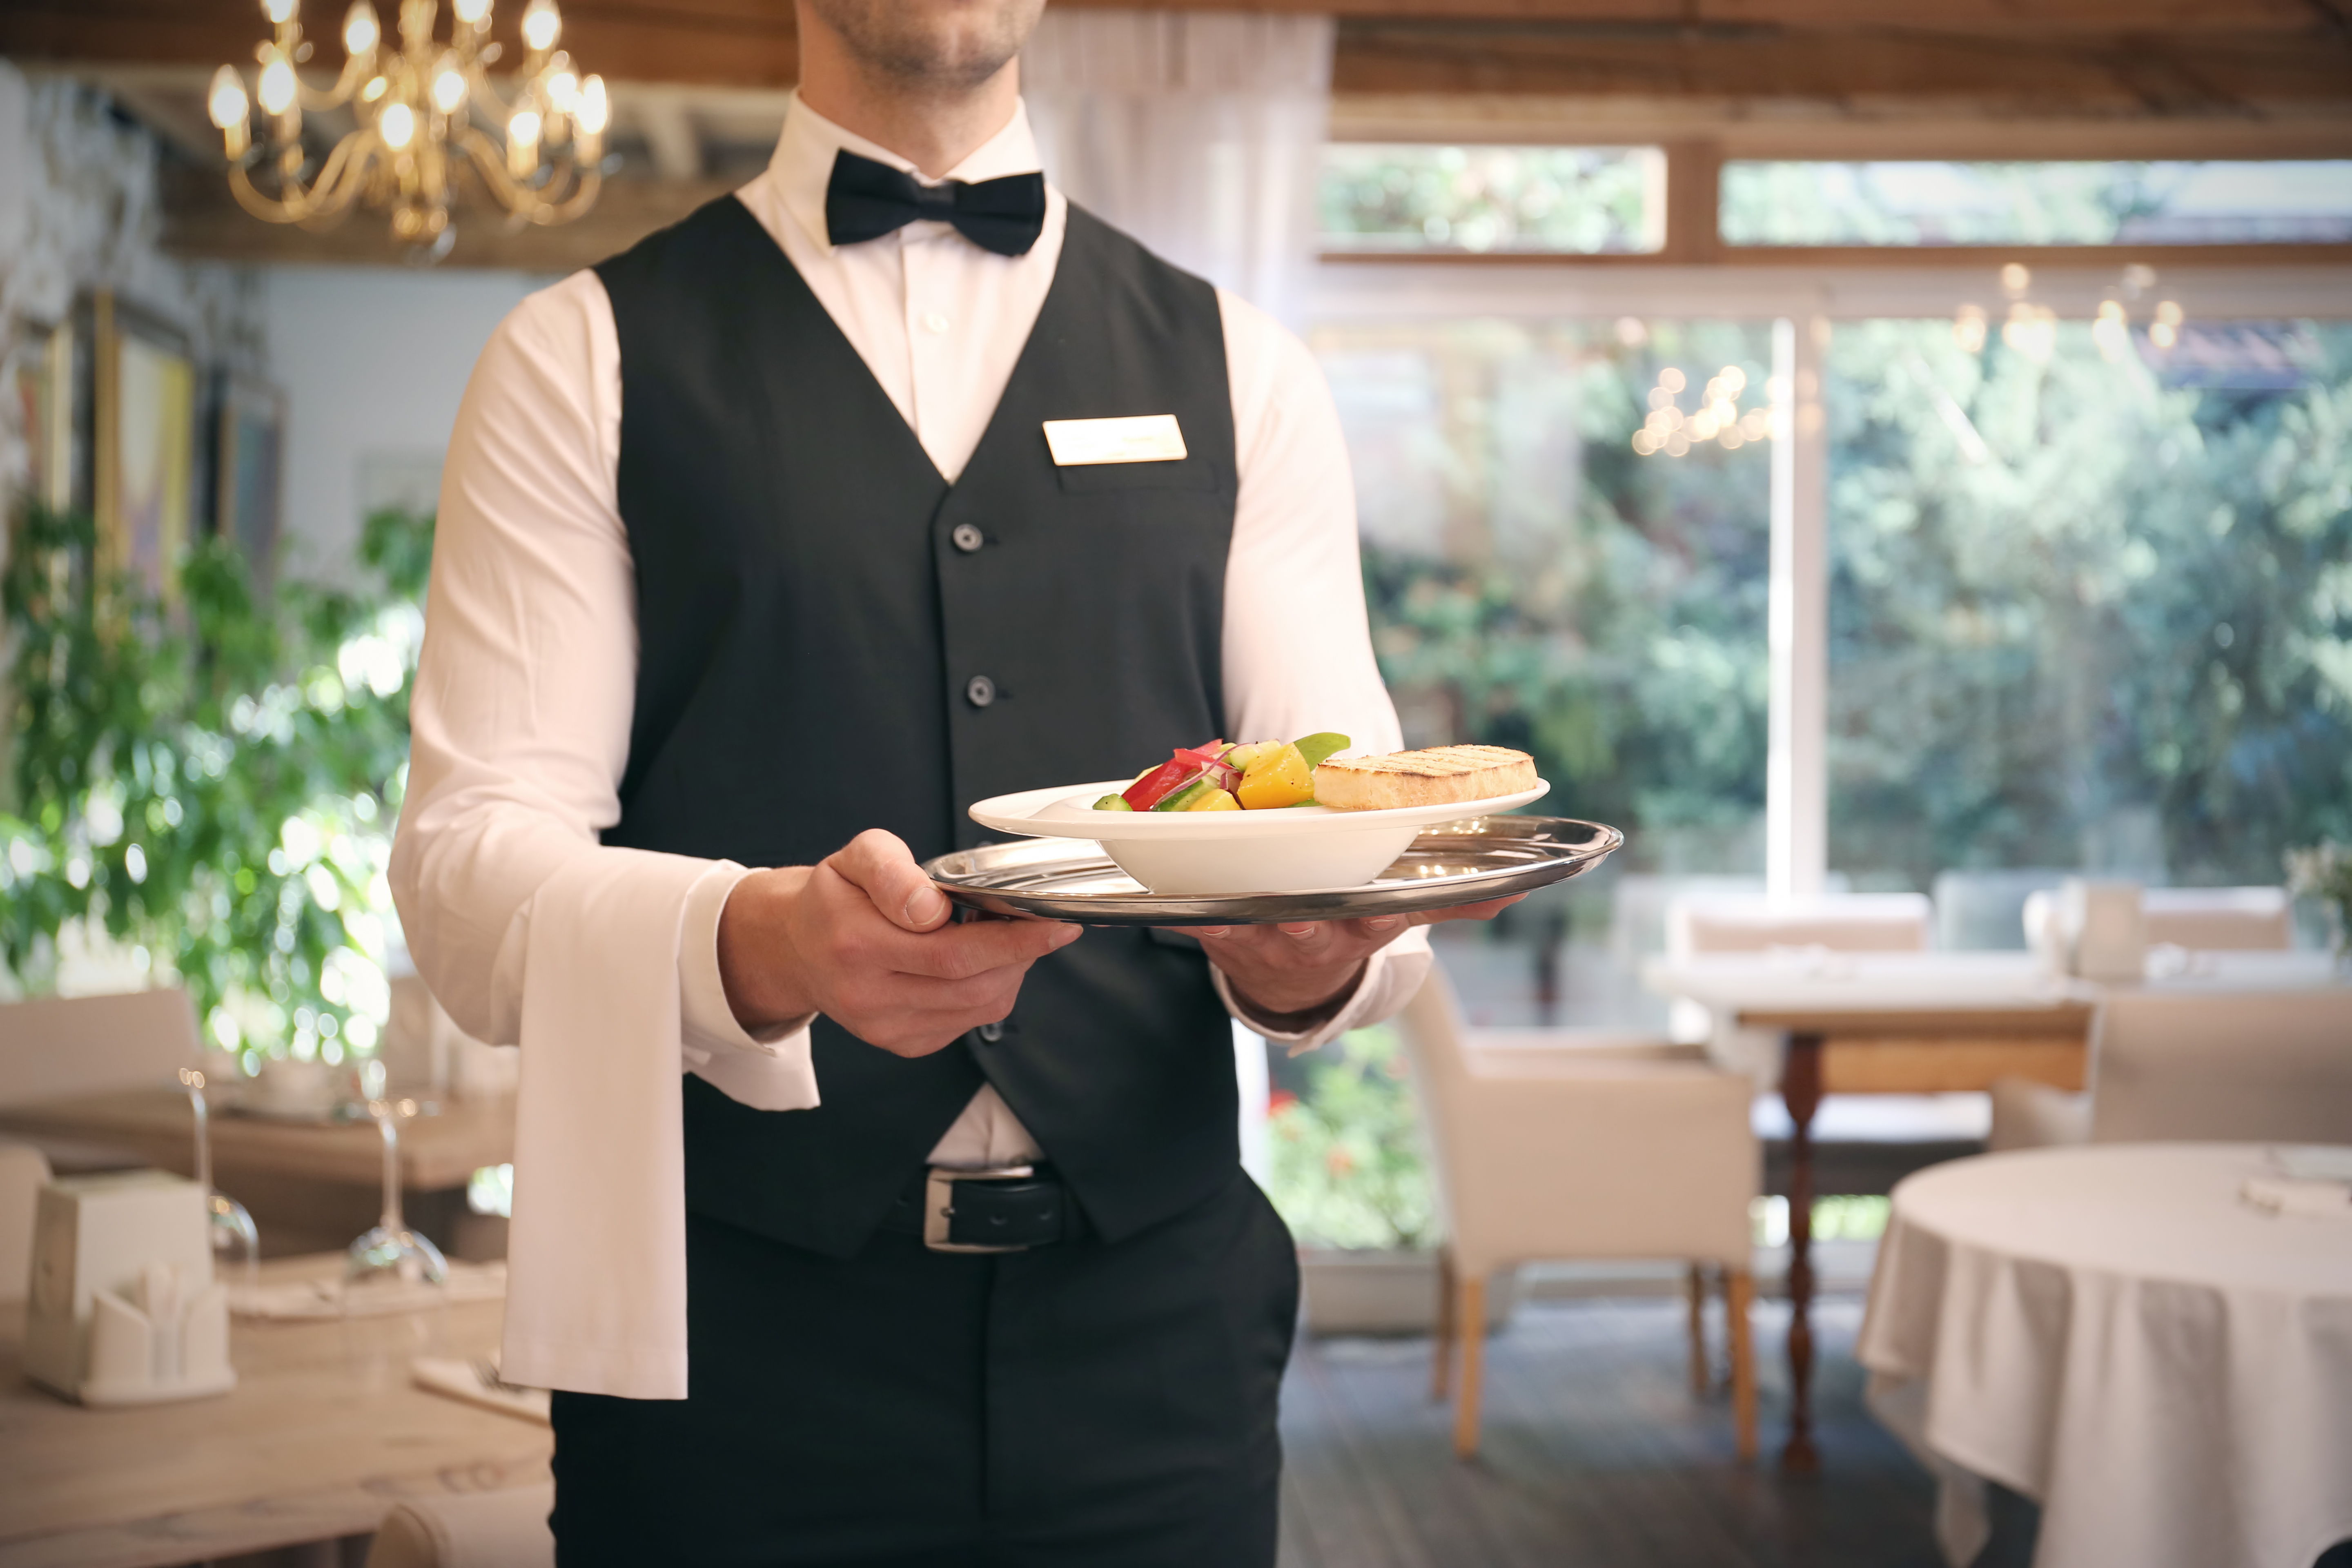 A waiter | Source: Shutterstock